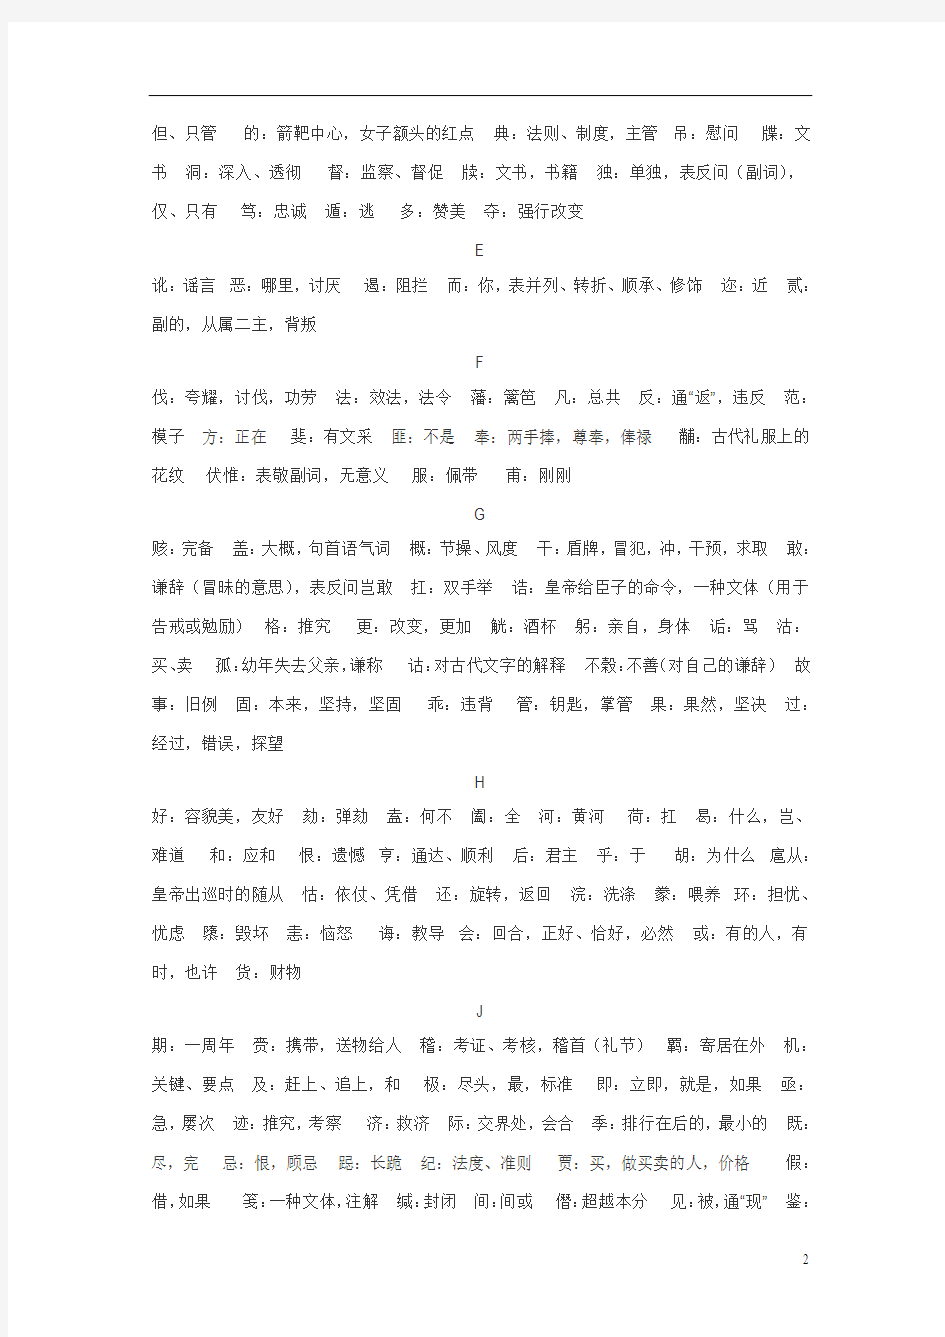 古汉语字典常考字词释义